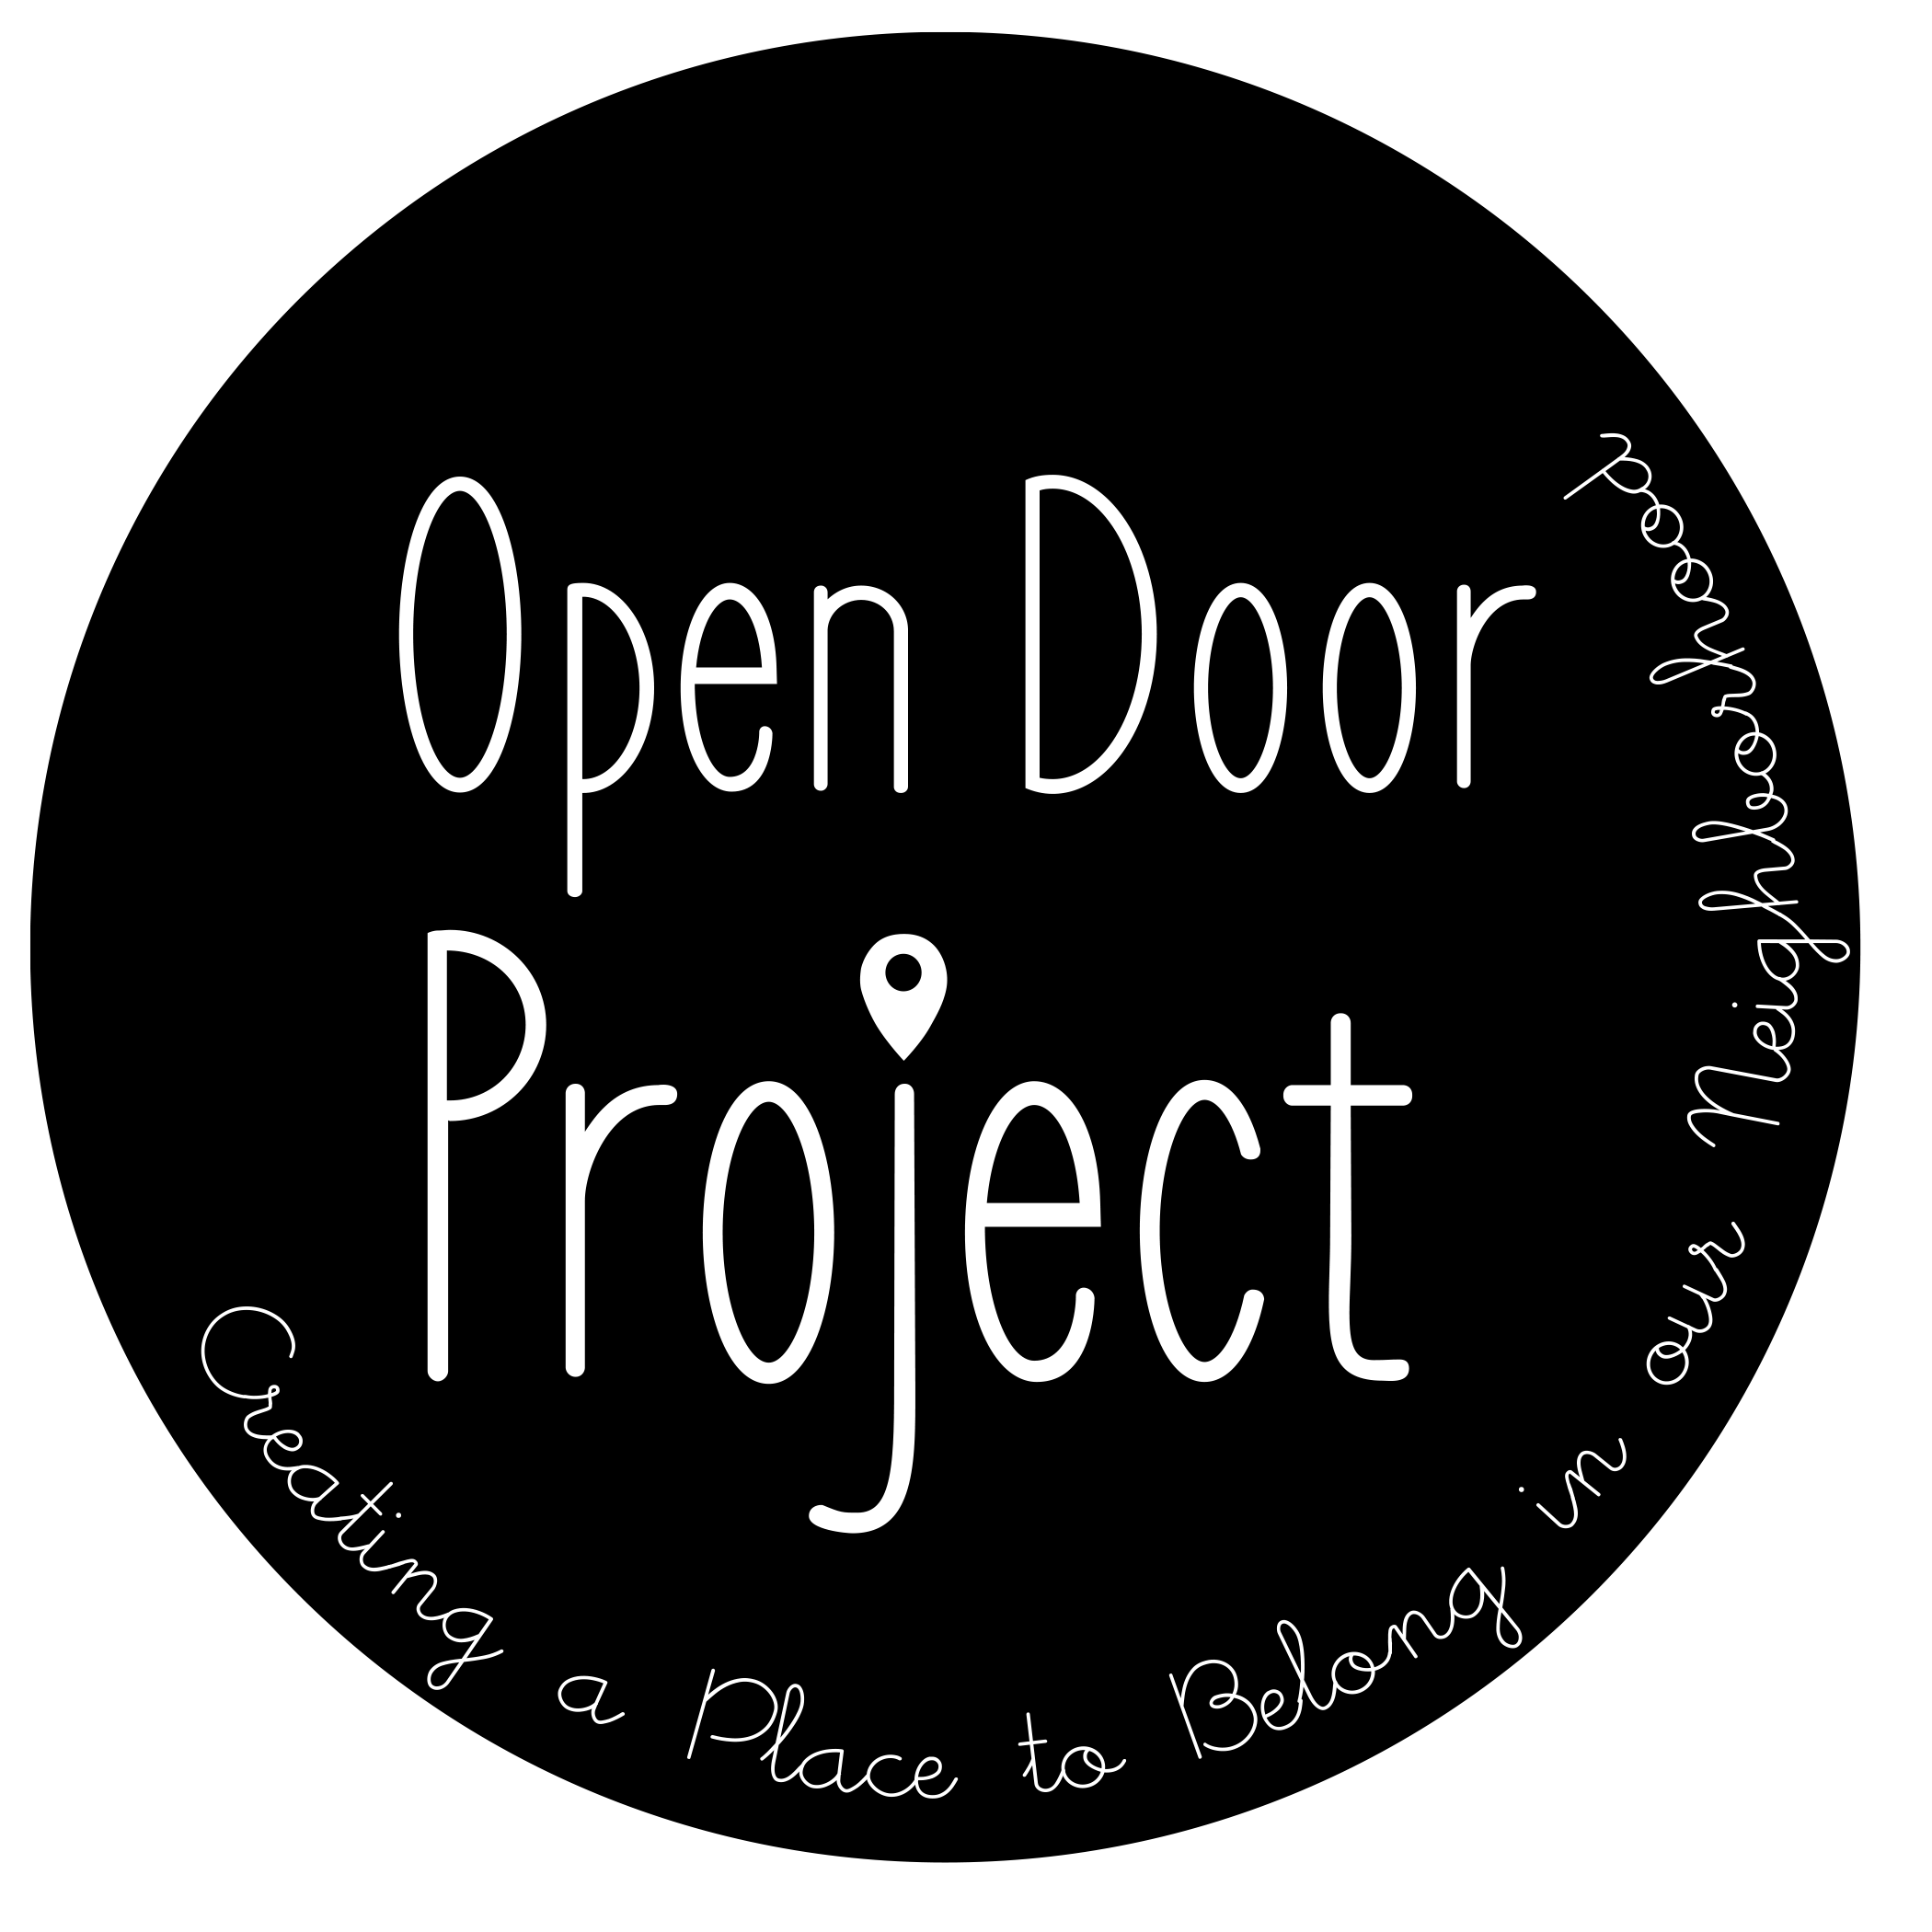 Welcome to Open Door Project